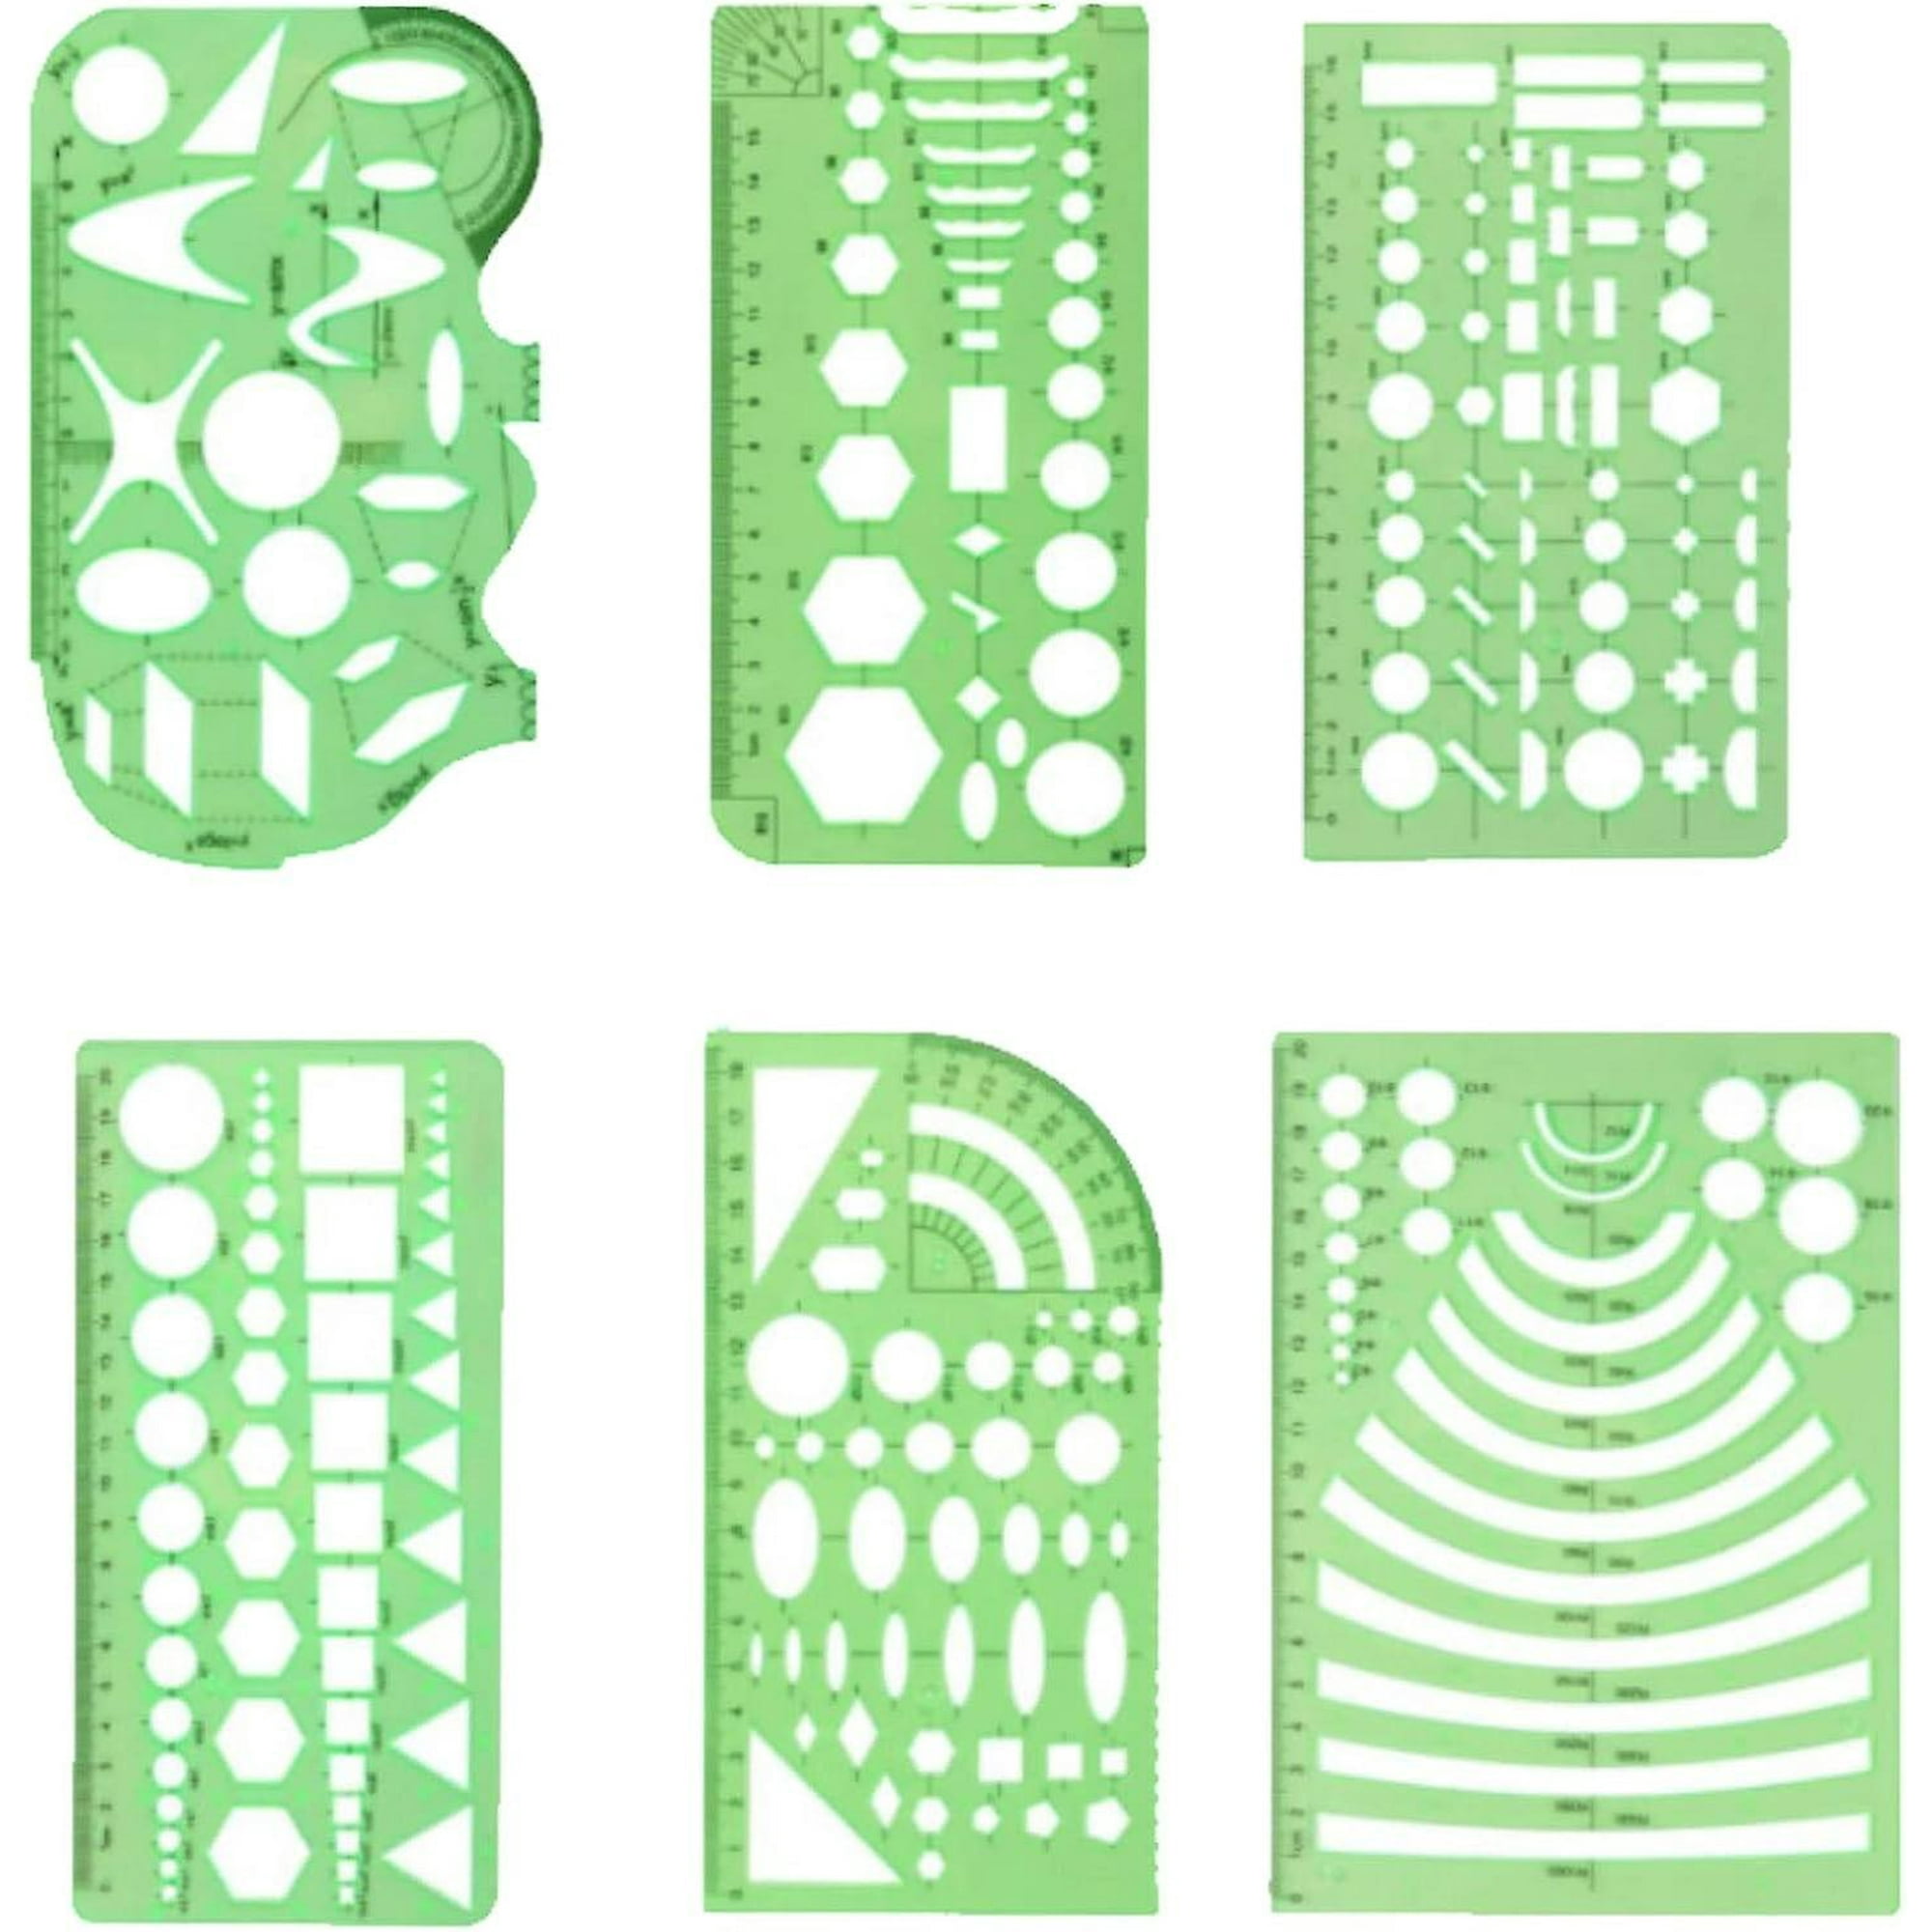 Plantilla circular y ovalada, paquete de 4 plantillas de medición de  plástico verde transparente, regla geométrica para oficina y escuela,  encofrados